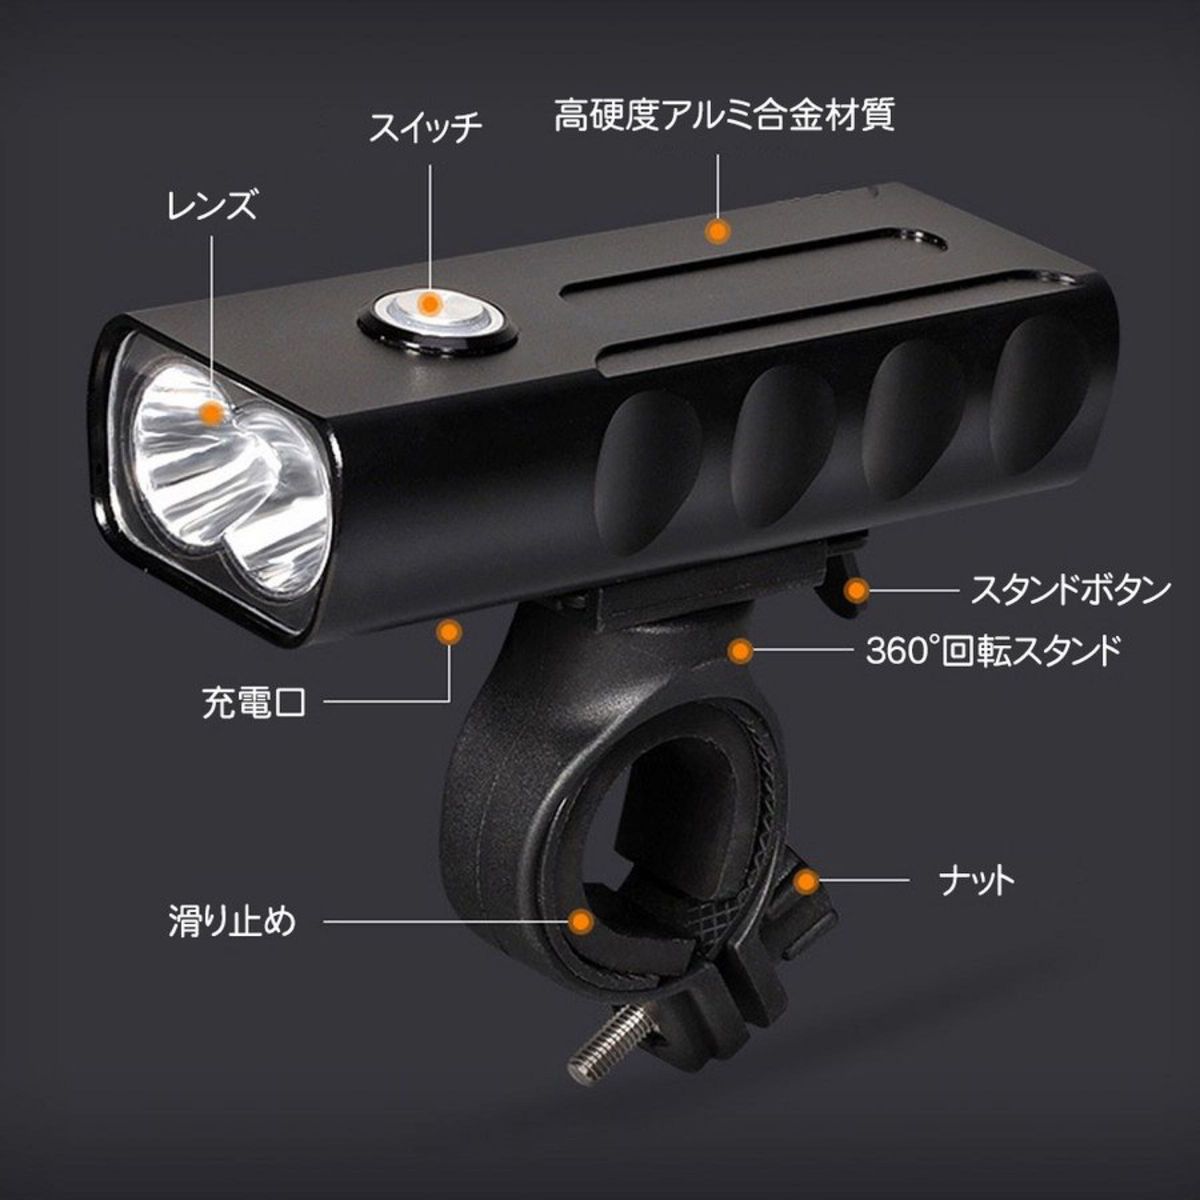  自転車ヘッドライト LEDライト 防水仕様 USB充電式 ハンドル取り付け型